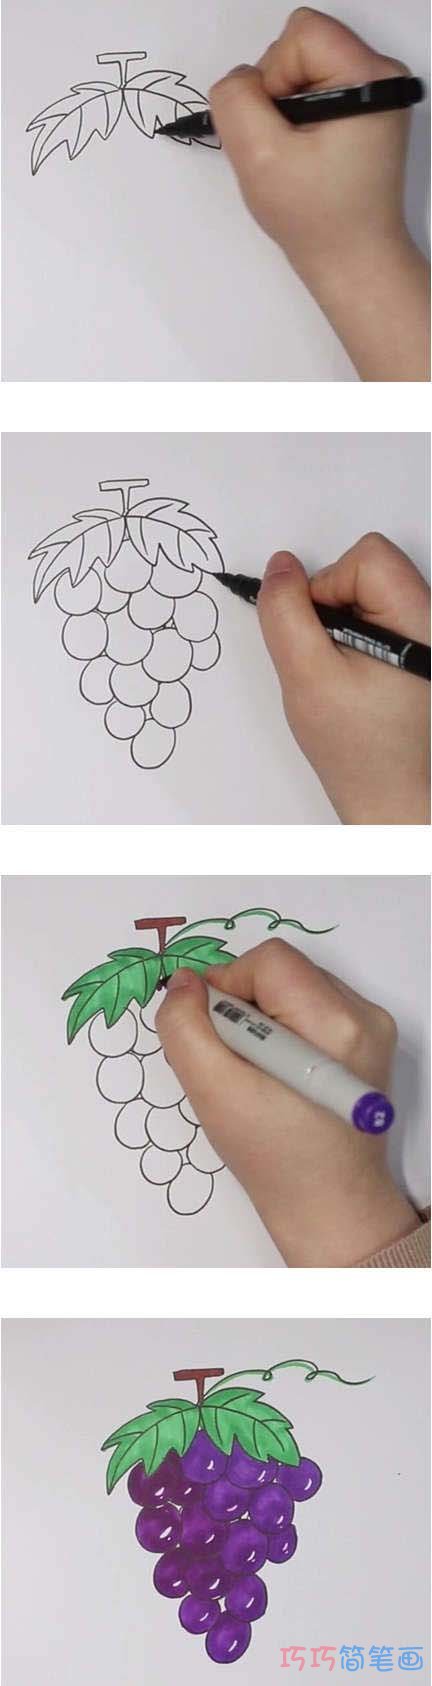 教你怎么画葡萄简笔画步骤教程涂色